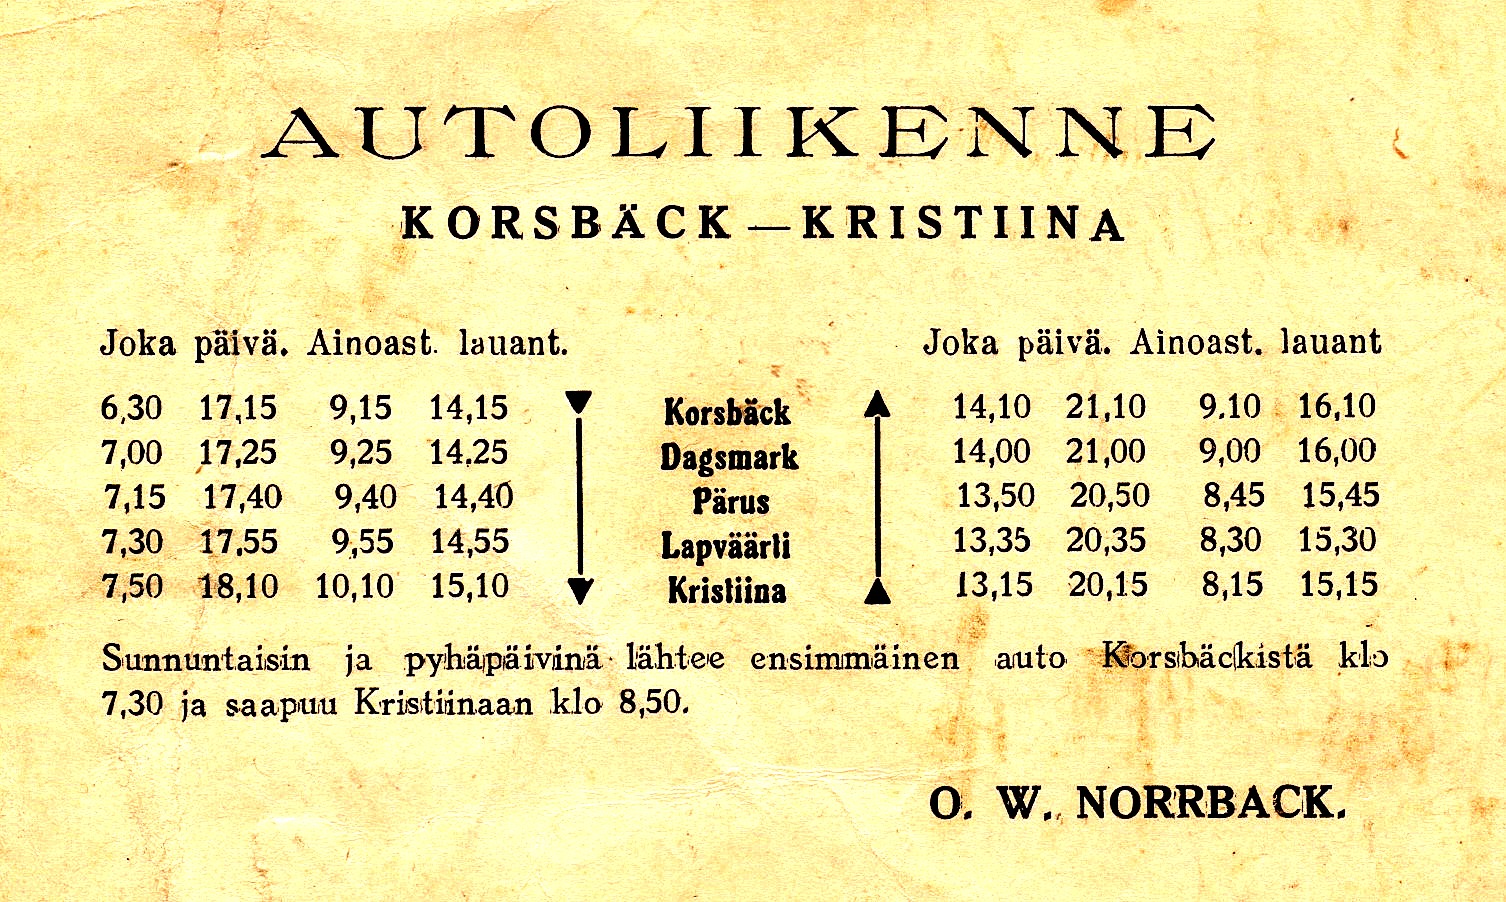 Norrback idkade också regelbunden busstrafik mellan Korsbäck och Kristinestad. Max Klockars har hittat denna tidtabell som förvånande nog är på finska.